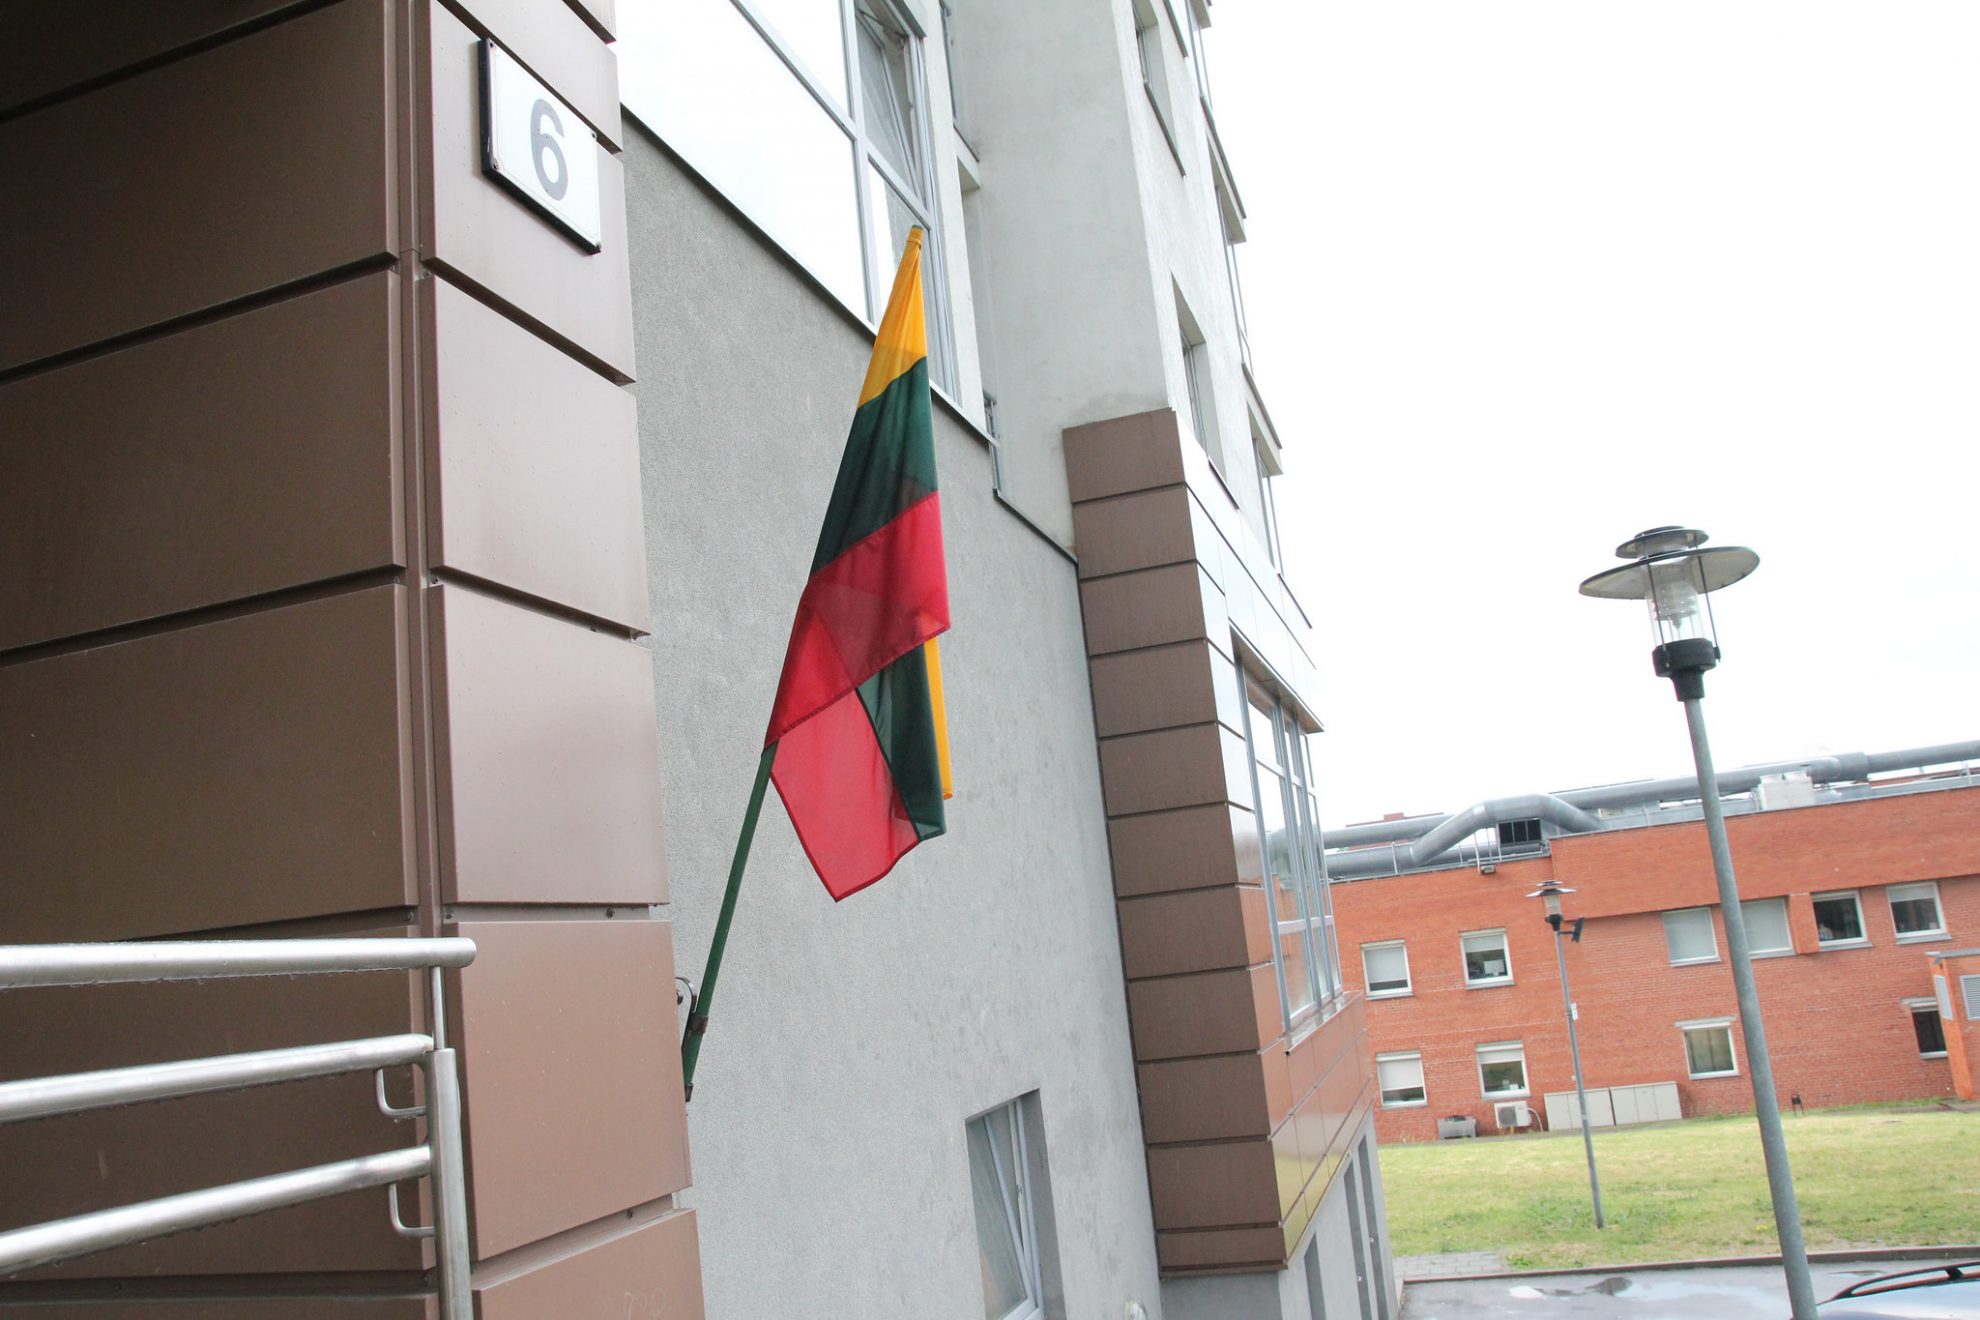 Trispalvė – Lietuvos valstybingumo simbolis, kurį privalo gerbti kiekvienas tautietis. O neiškėlusiesiems vėliavos per valstybines šventes gresia nemenka bauda.